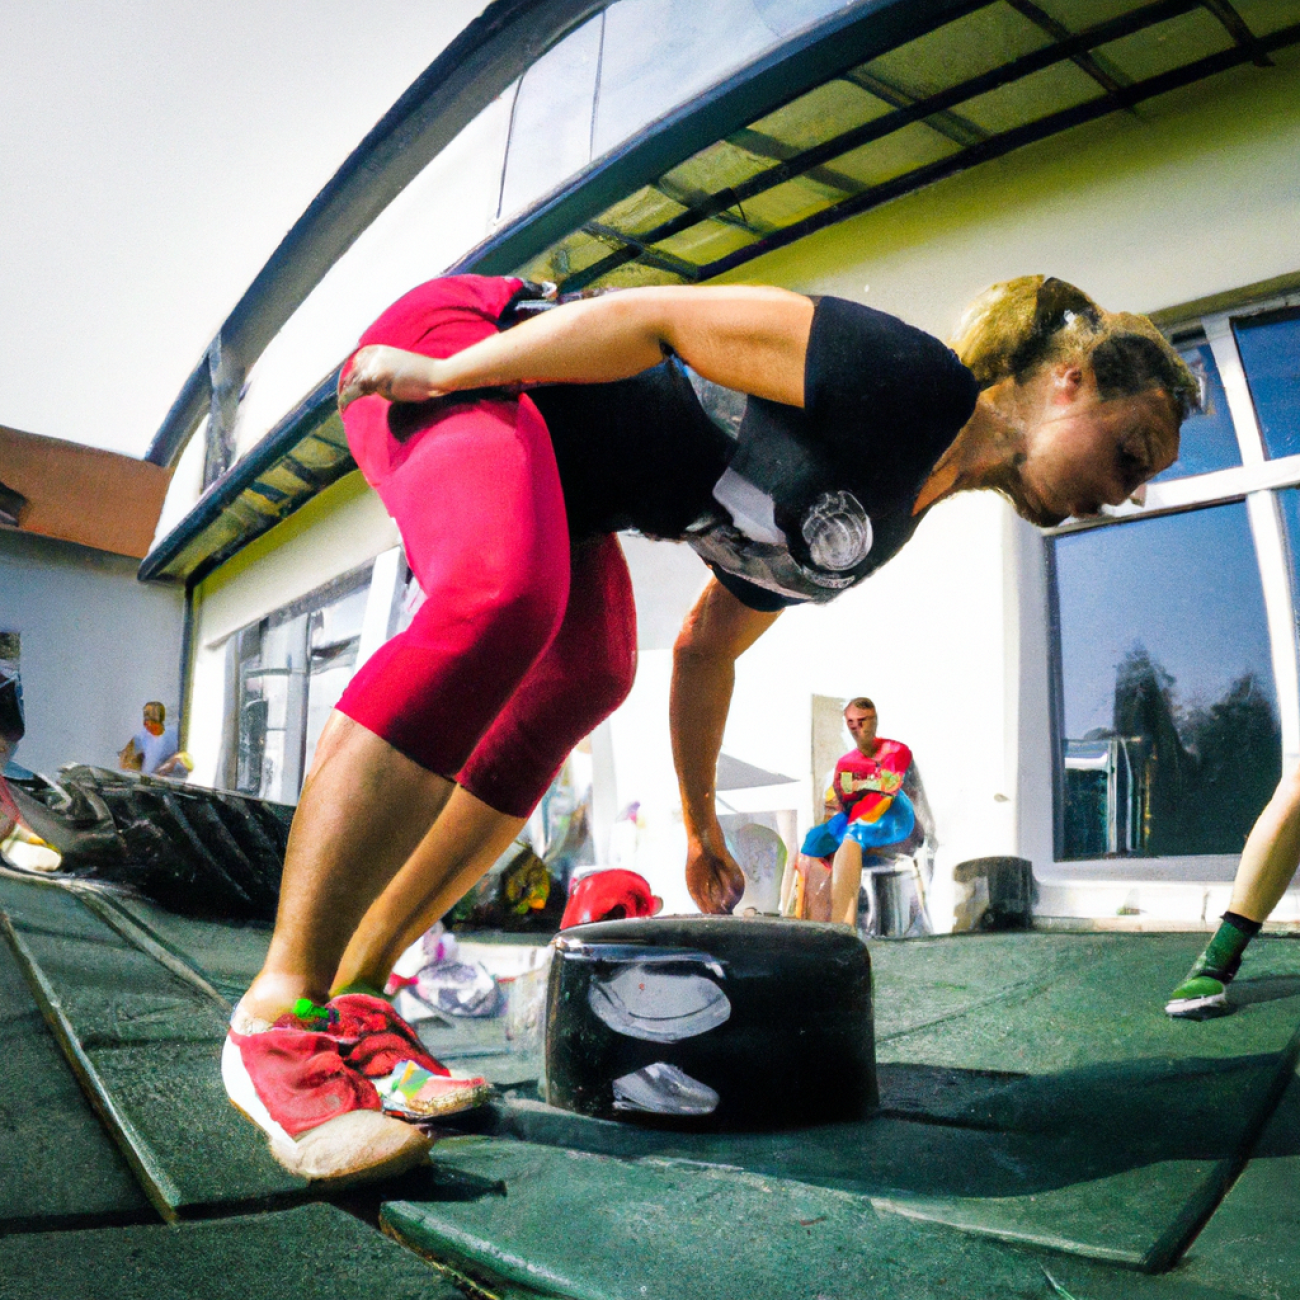 7. Profesionální rady pro úspěšné zapojení​ CrossFit cviků​ do tréninkové rutiny žen